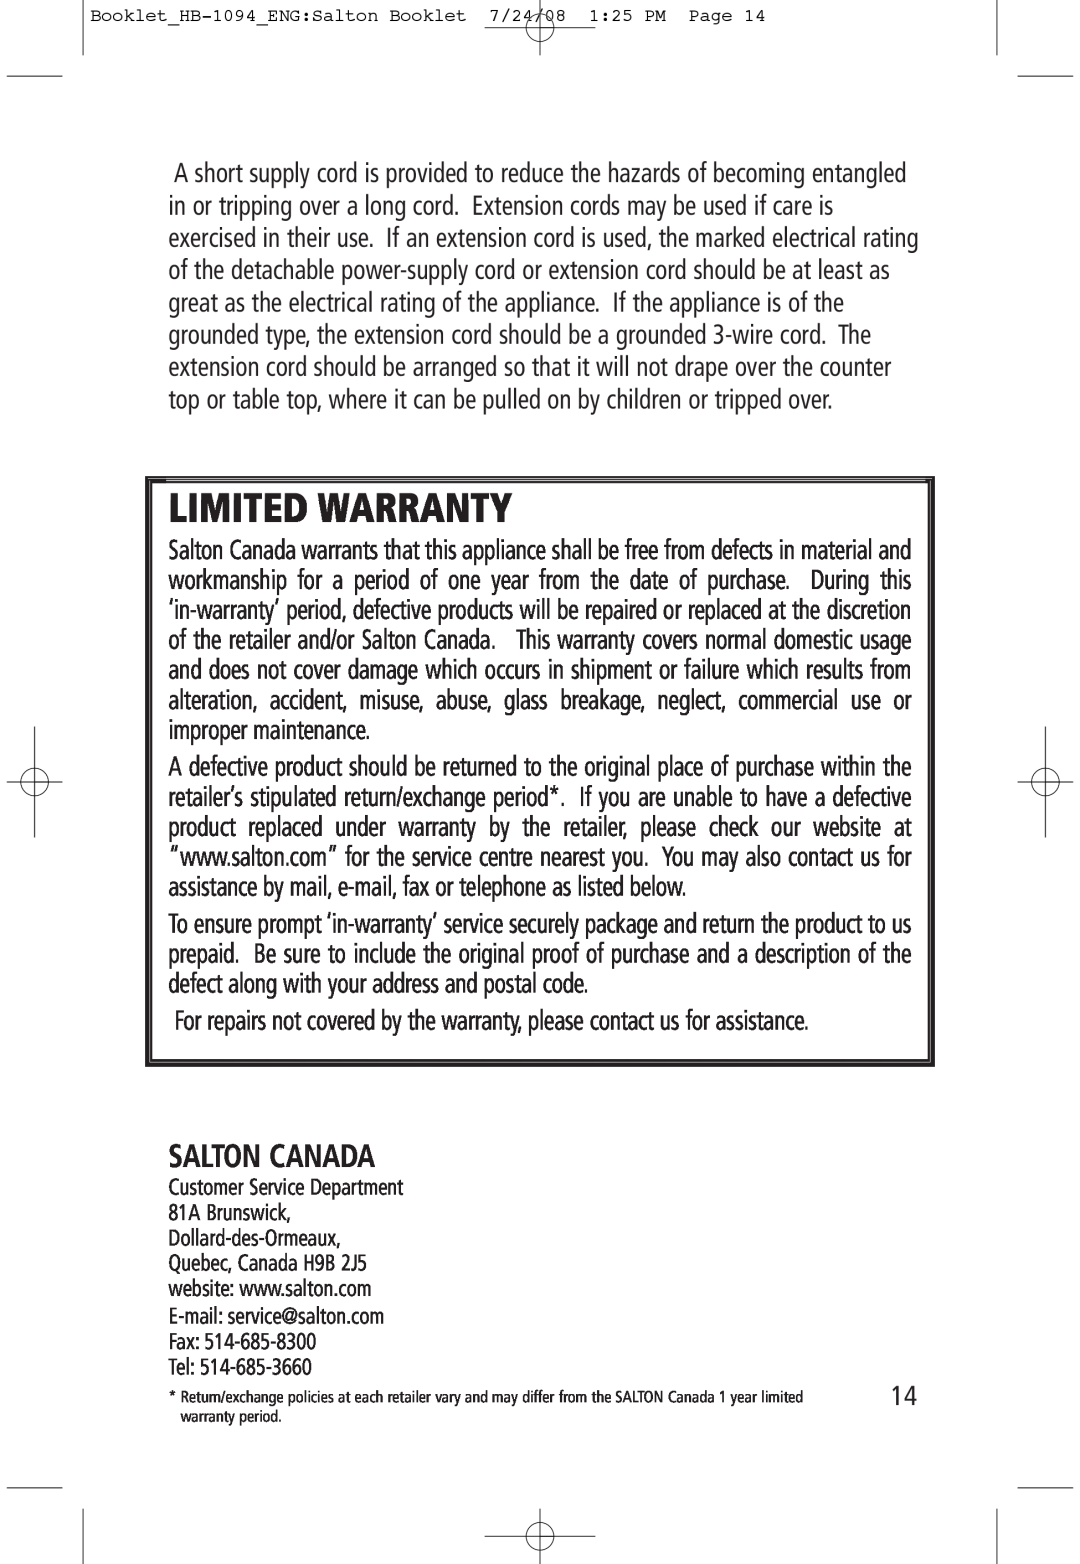 Salton HB-1094 manual Salton Canada, Limited Warranty, Tel 